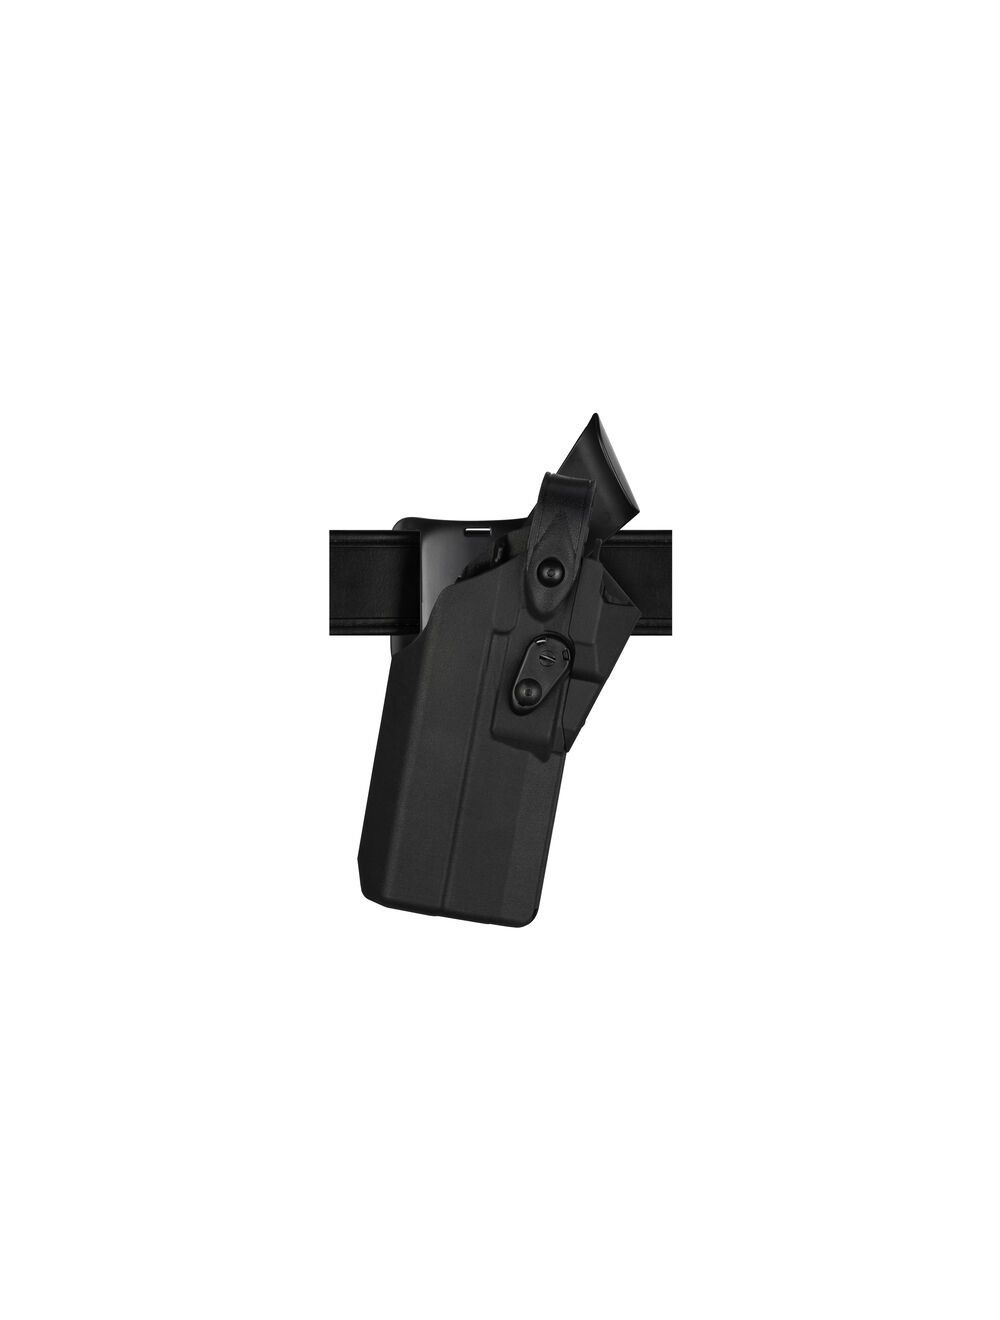 Model 7360RDS 7TS ALS/SLS Mid-Ride Duty Holster for Glock 34 MOS w/ Light